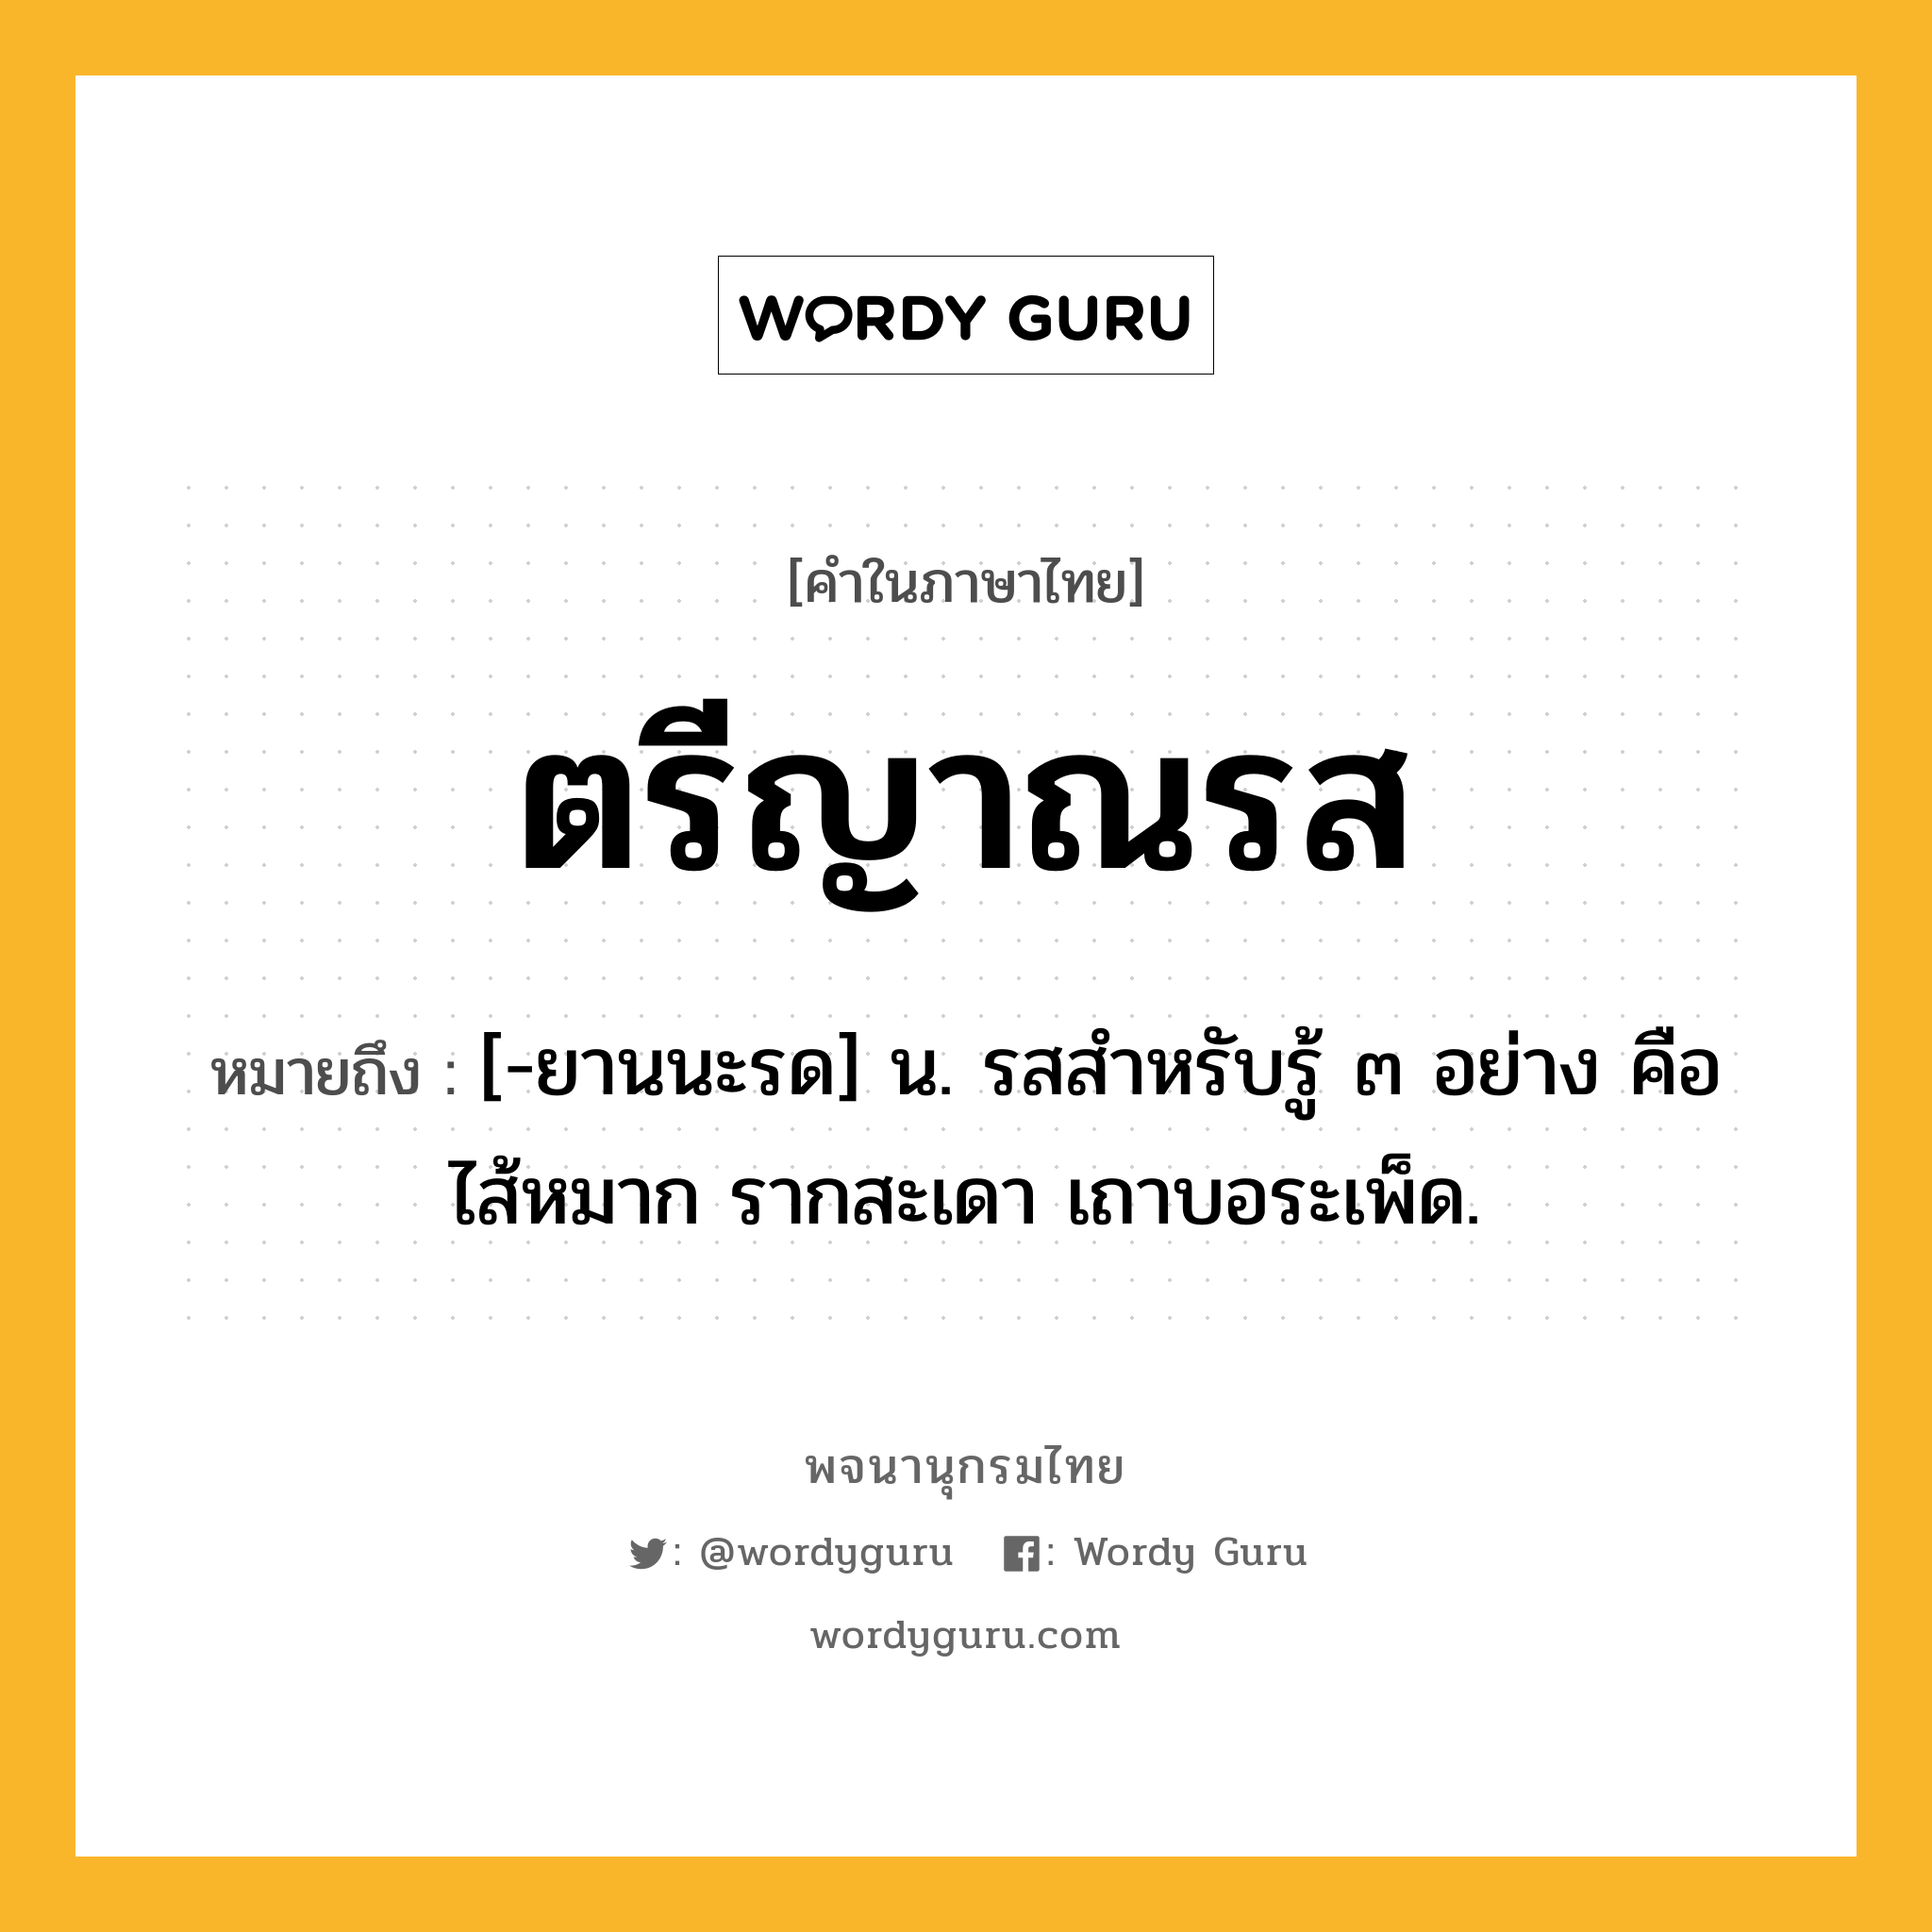 ตรีญาณรส ความหมาย หมายถึงอะไร?, คำในภาษาไทย ตรีญาณรส หมายถึง [-ยานนะรด] น. รสสําหรับรู้ ๓ อย่าง คือ ไส้หมาก รากสะเดา เถาบอระเพ็ด.